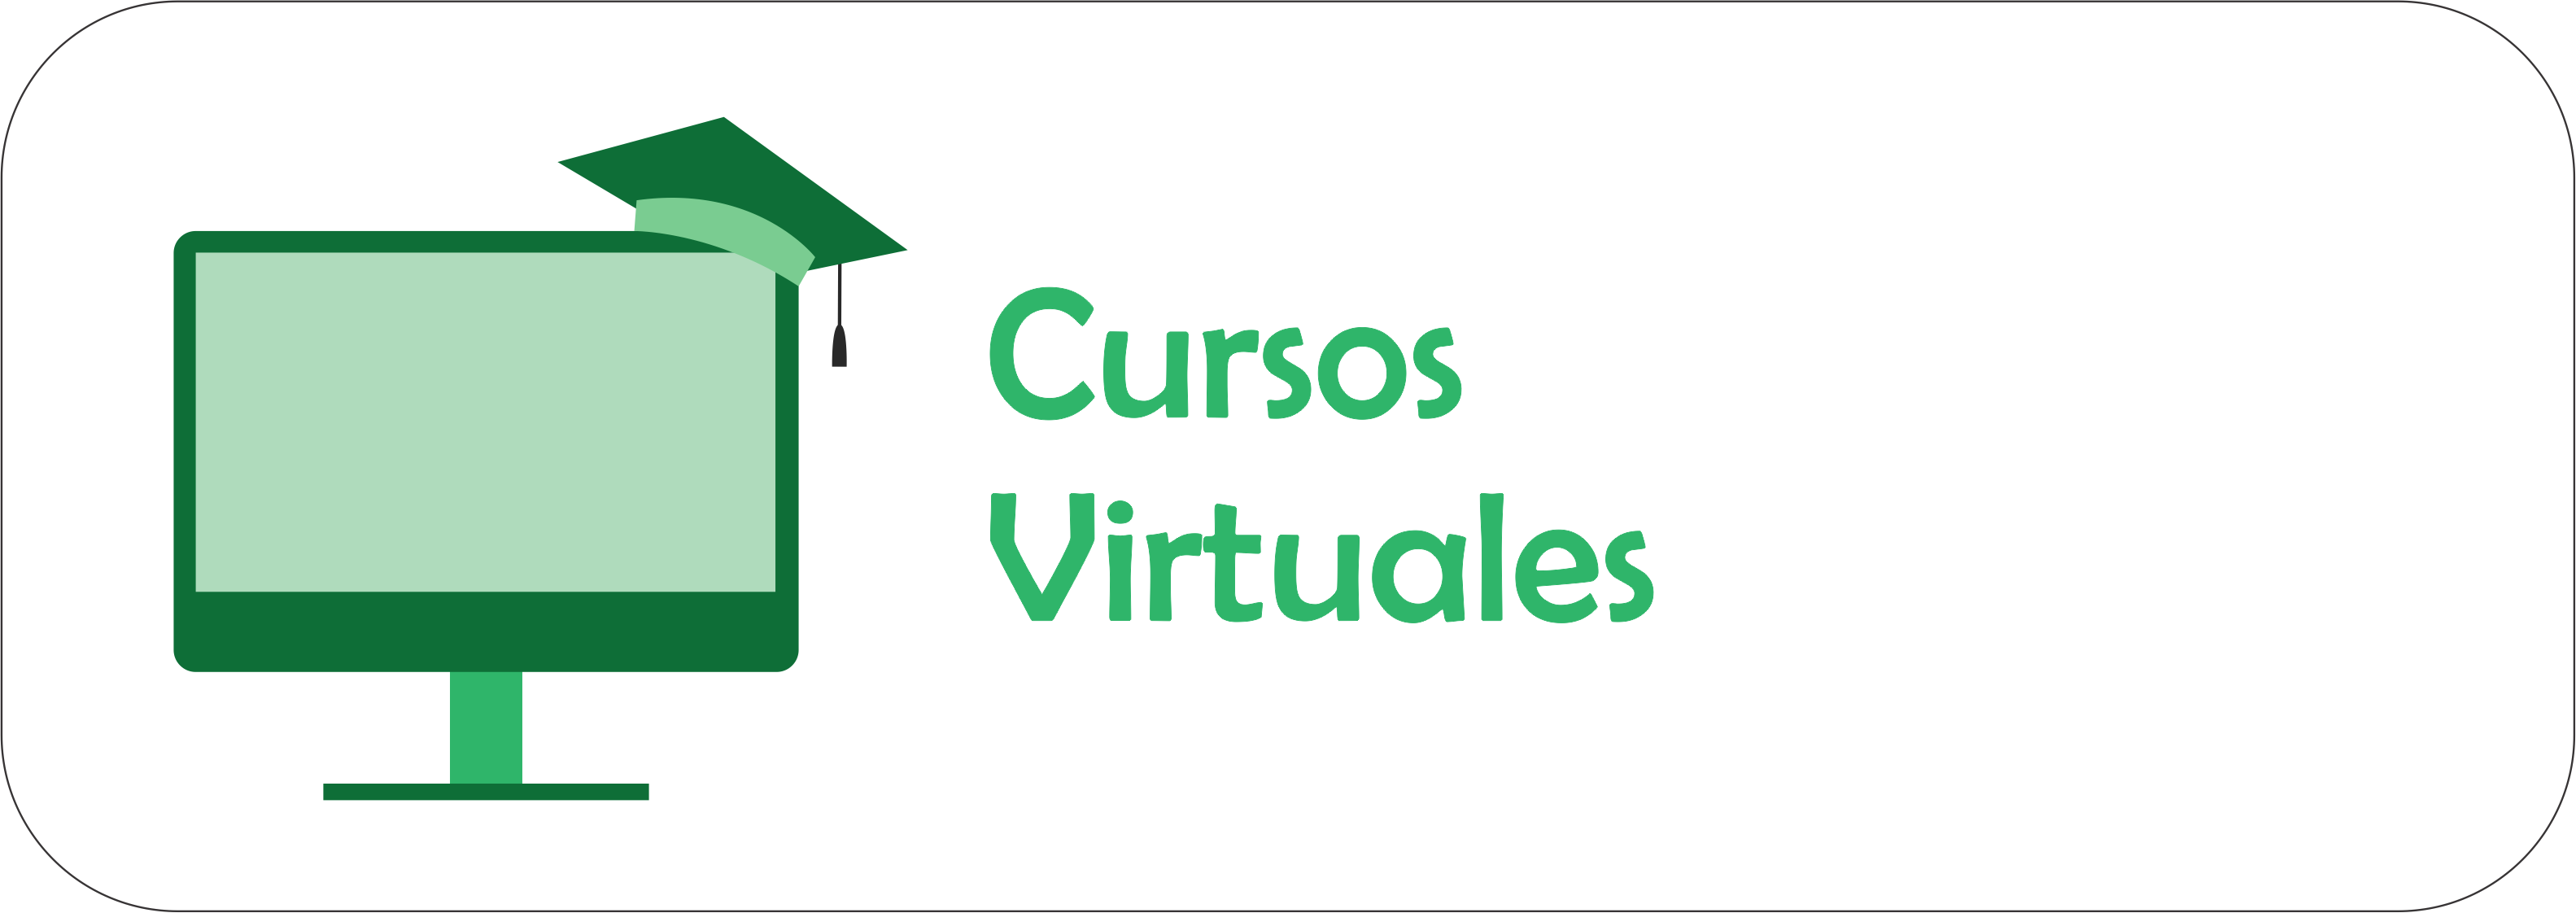 Imagen de presentación de los cursos virtuales